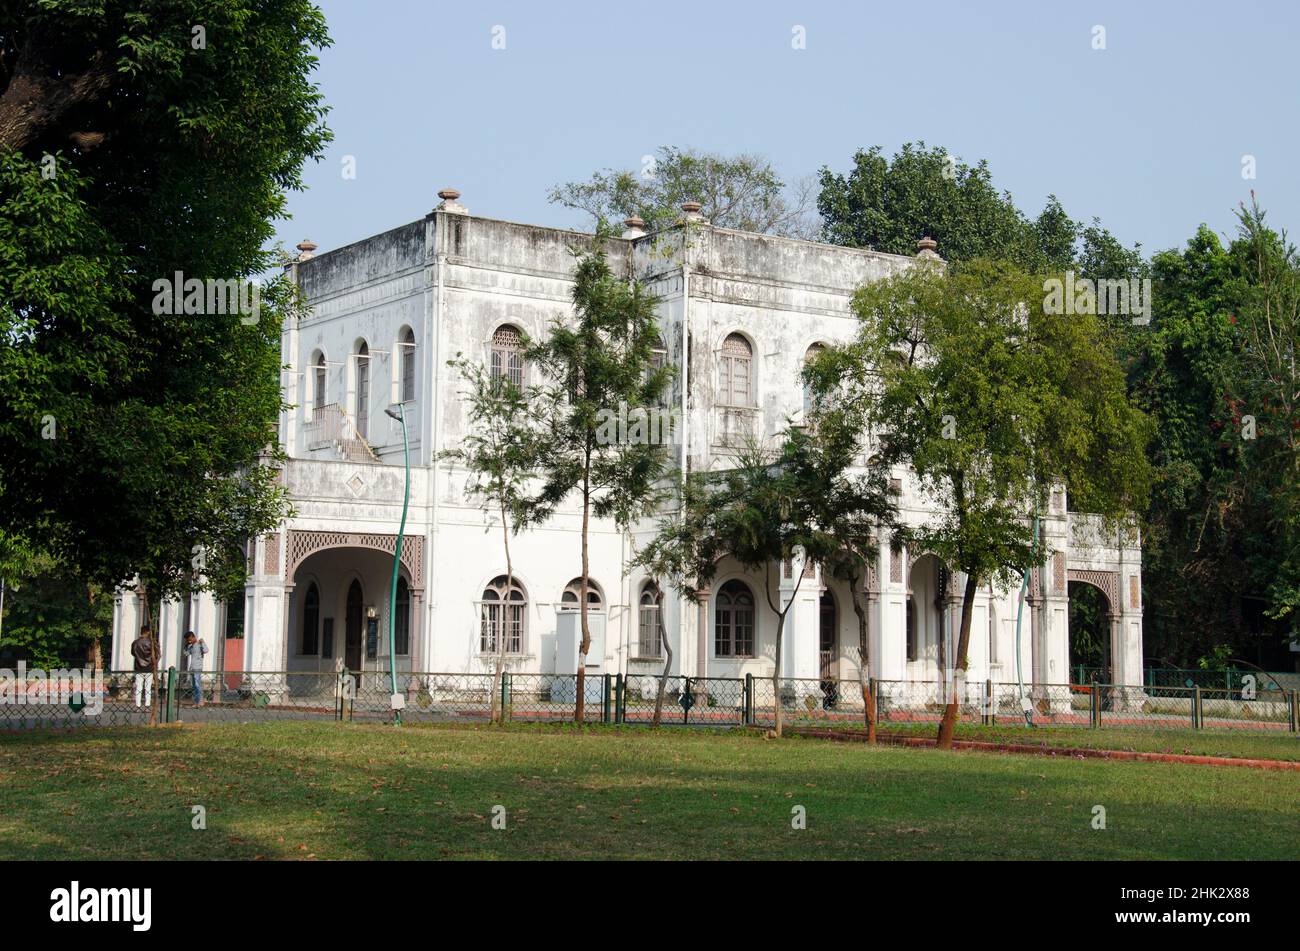 Edificio del museo de salud, ubicado en el complejo Sayaji bAug, también conocido como Kamati bago, Vadodara, Gujarat, India Foto de stock